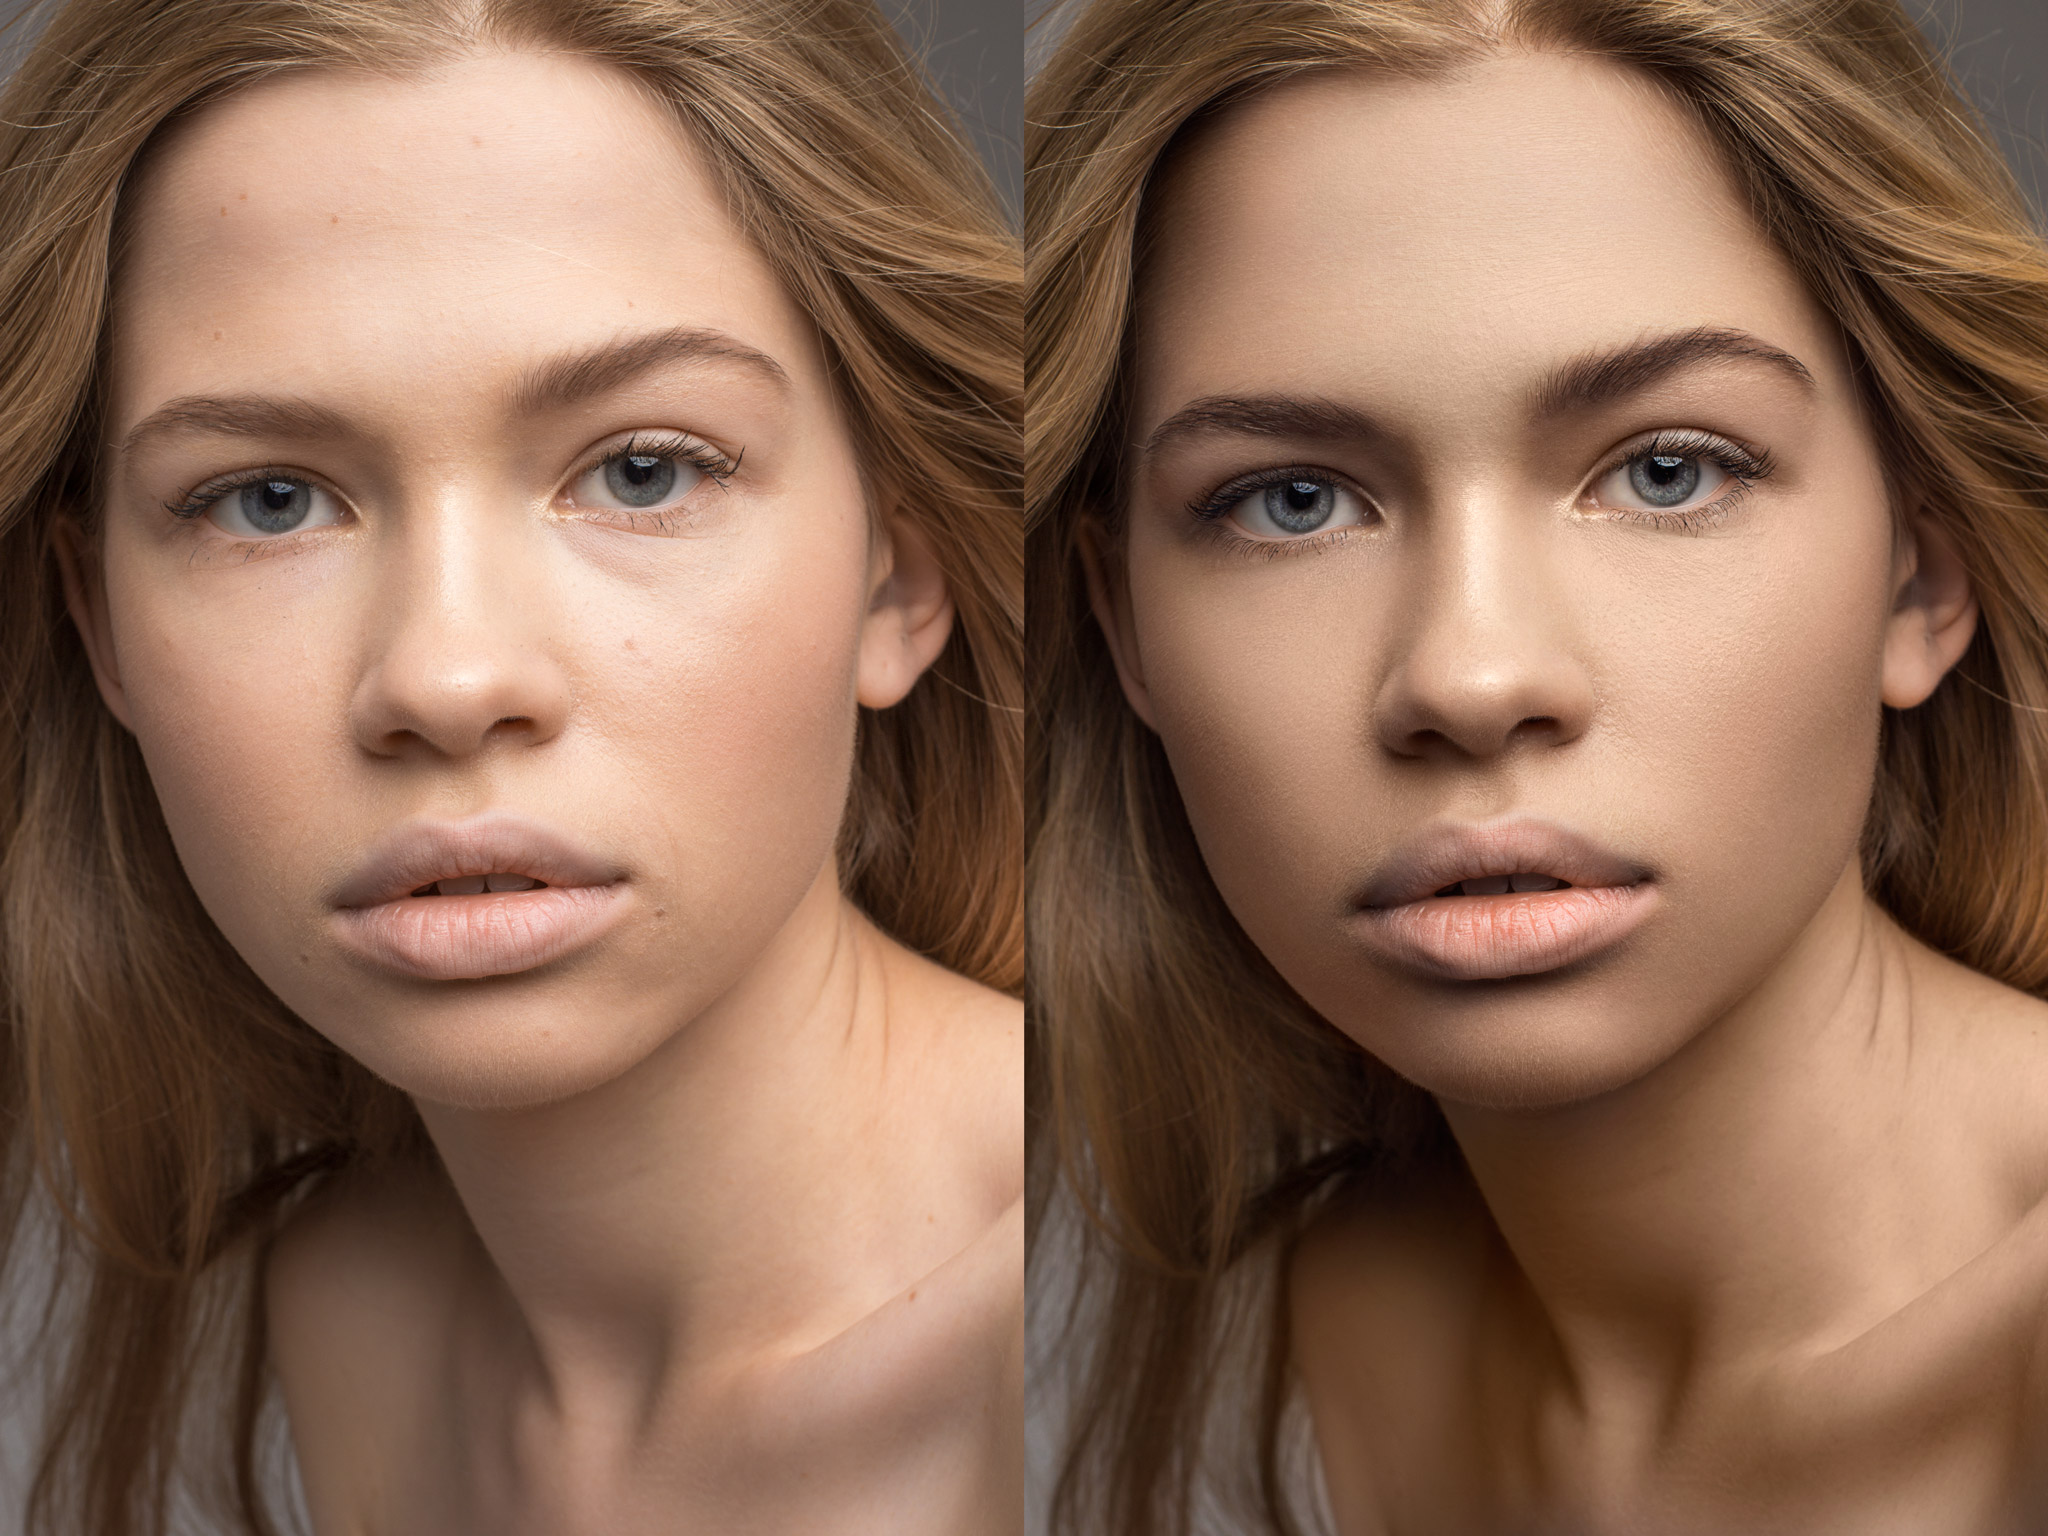 Обработка фото в фотошопе обработка лица